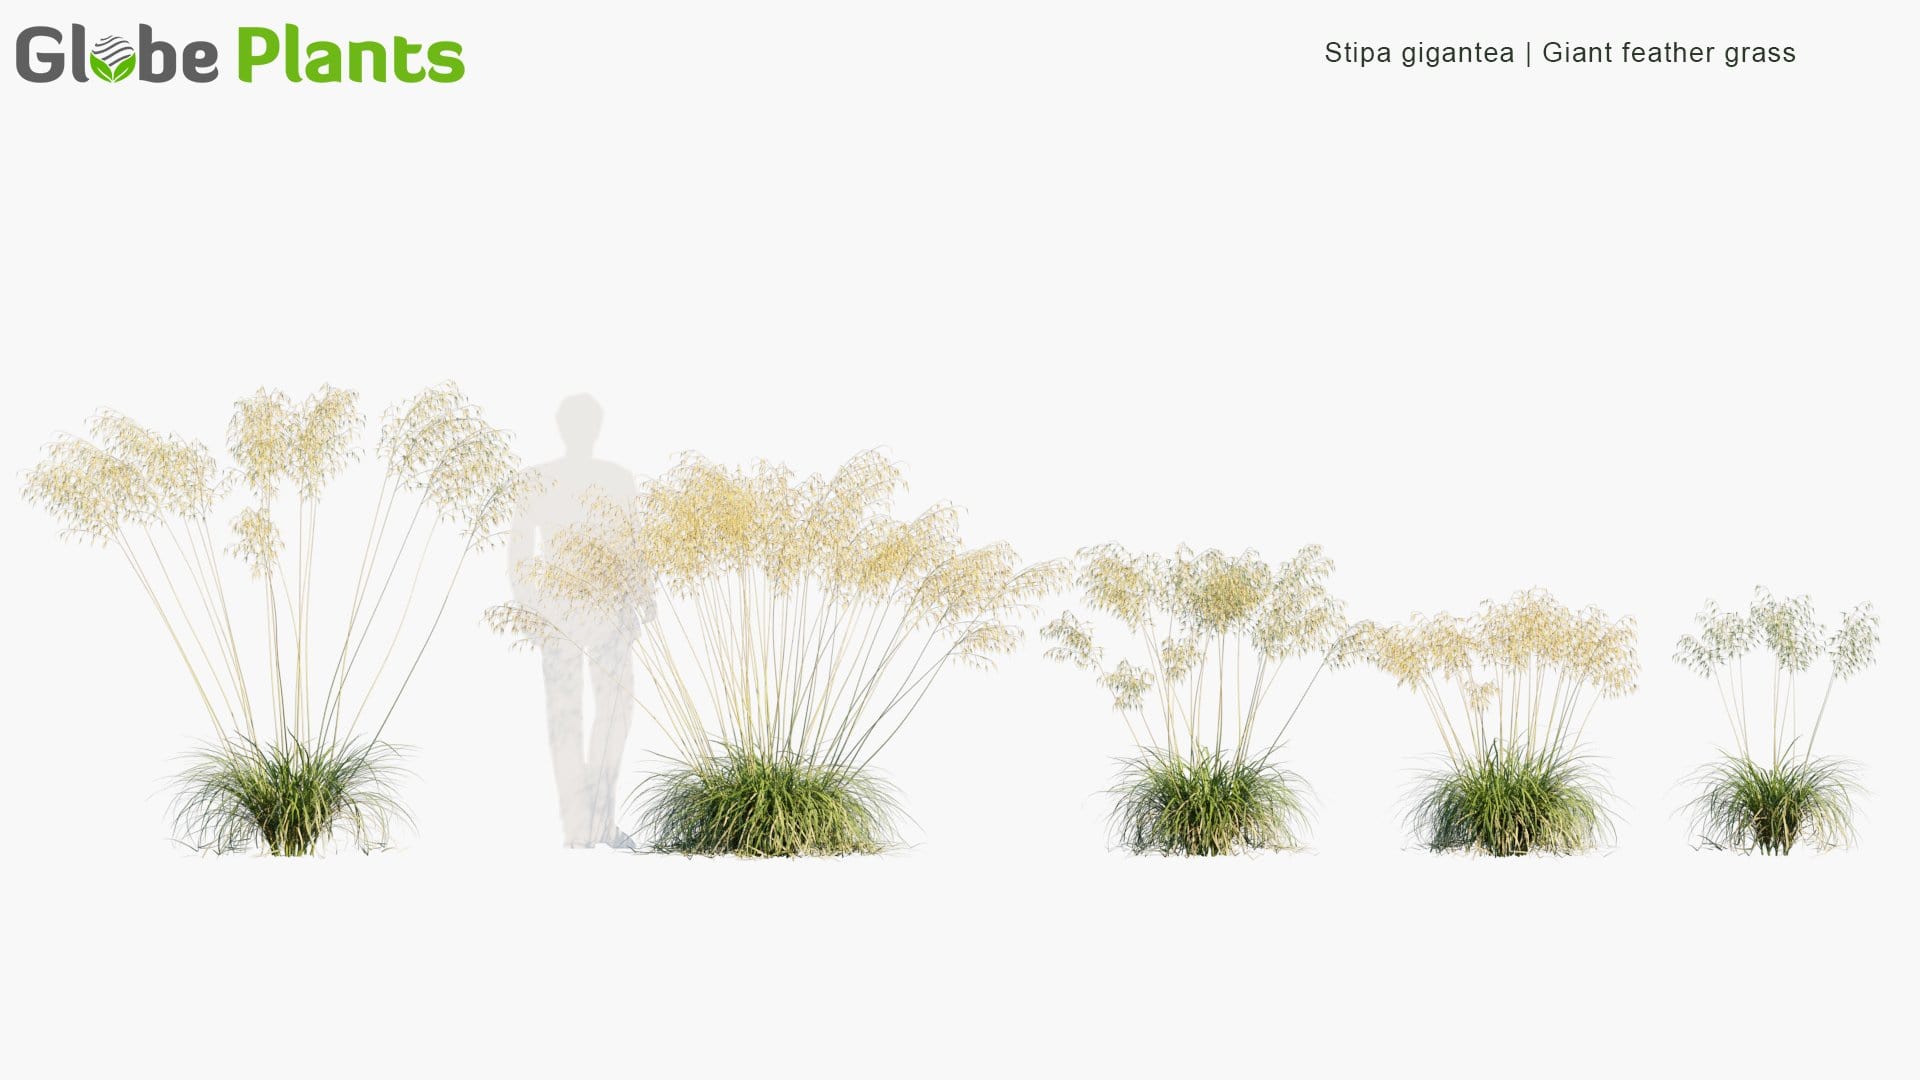 Stipa Gigantea - Giant Feather Grass, Giant Needle Grass, Golden Oats (3D Model)